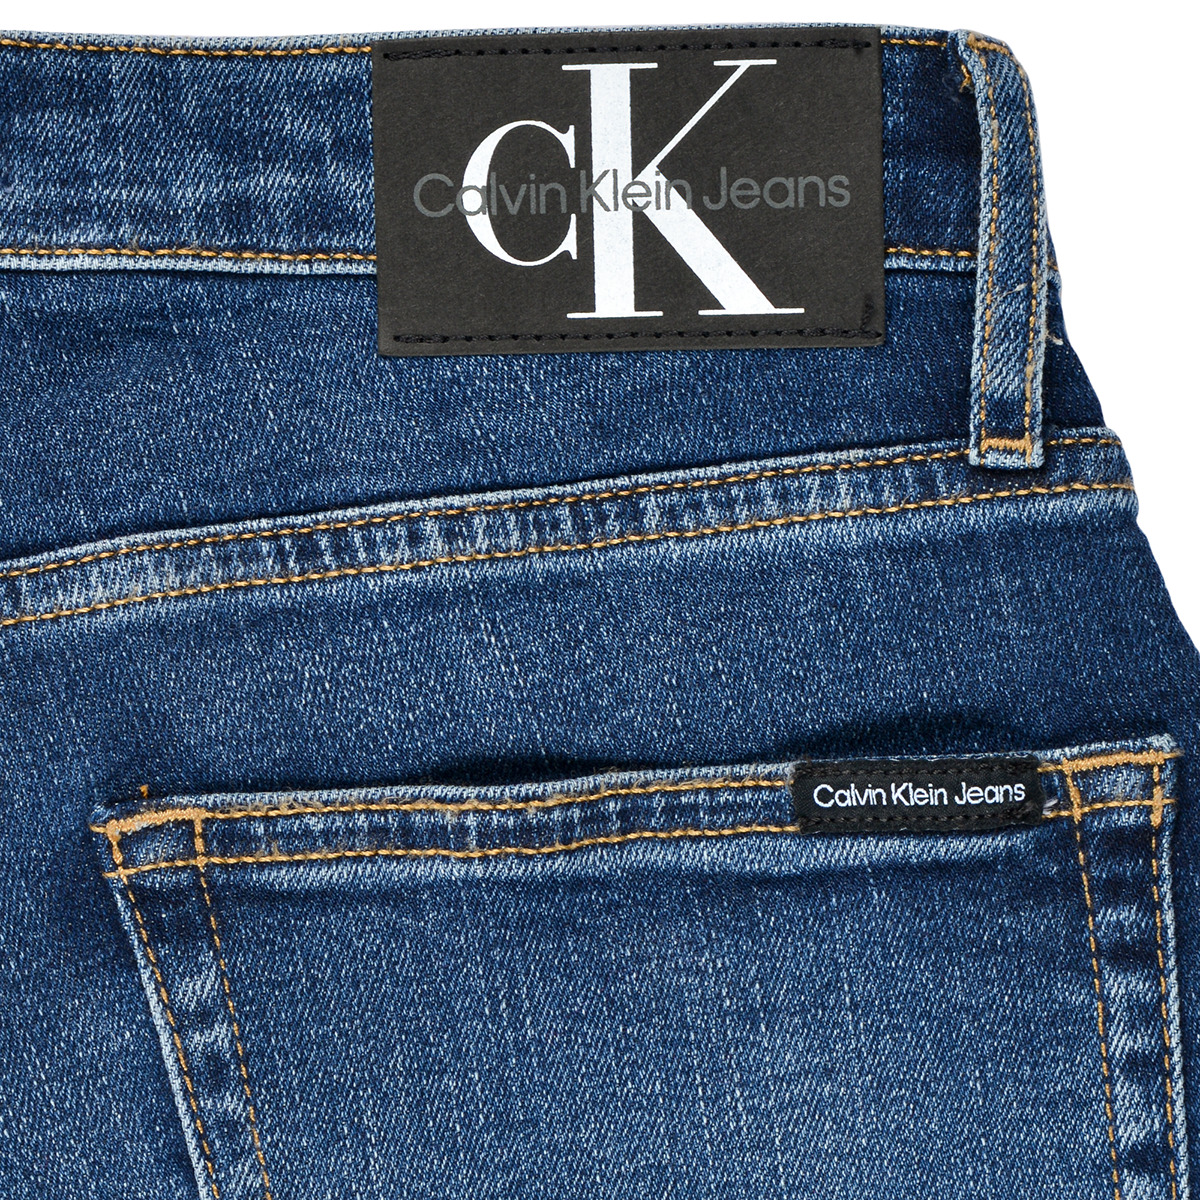 Calvin Klein Jeans Bleu REGULAR SHORT ESS BLUE TxL1dK1g